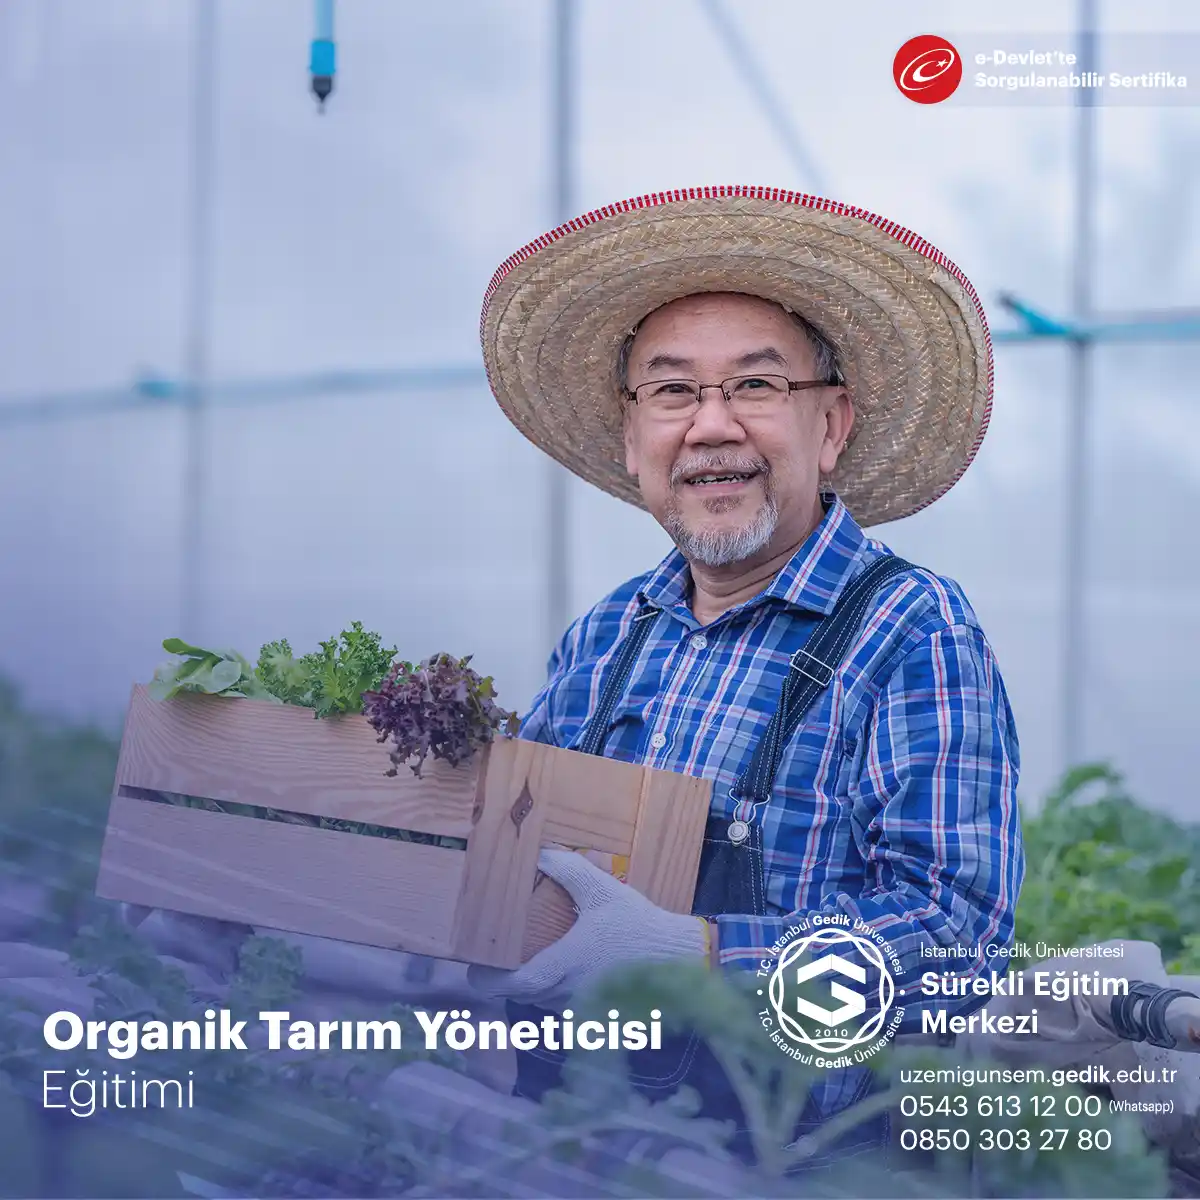 Organik Tarım Yöneticisi Sertifikalı Eğitim Programı içeriği oldukça geniş olan bu program mesleki alanda katılımcıya bilgi, tecrübe ve kazanım sunması hedeflenerek hazırlanmıştır..